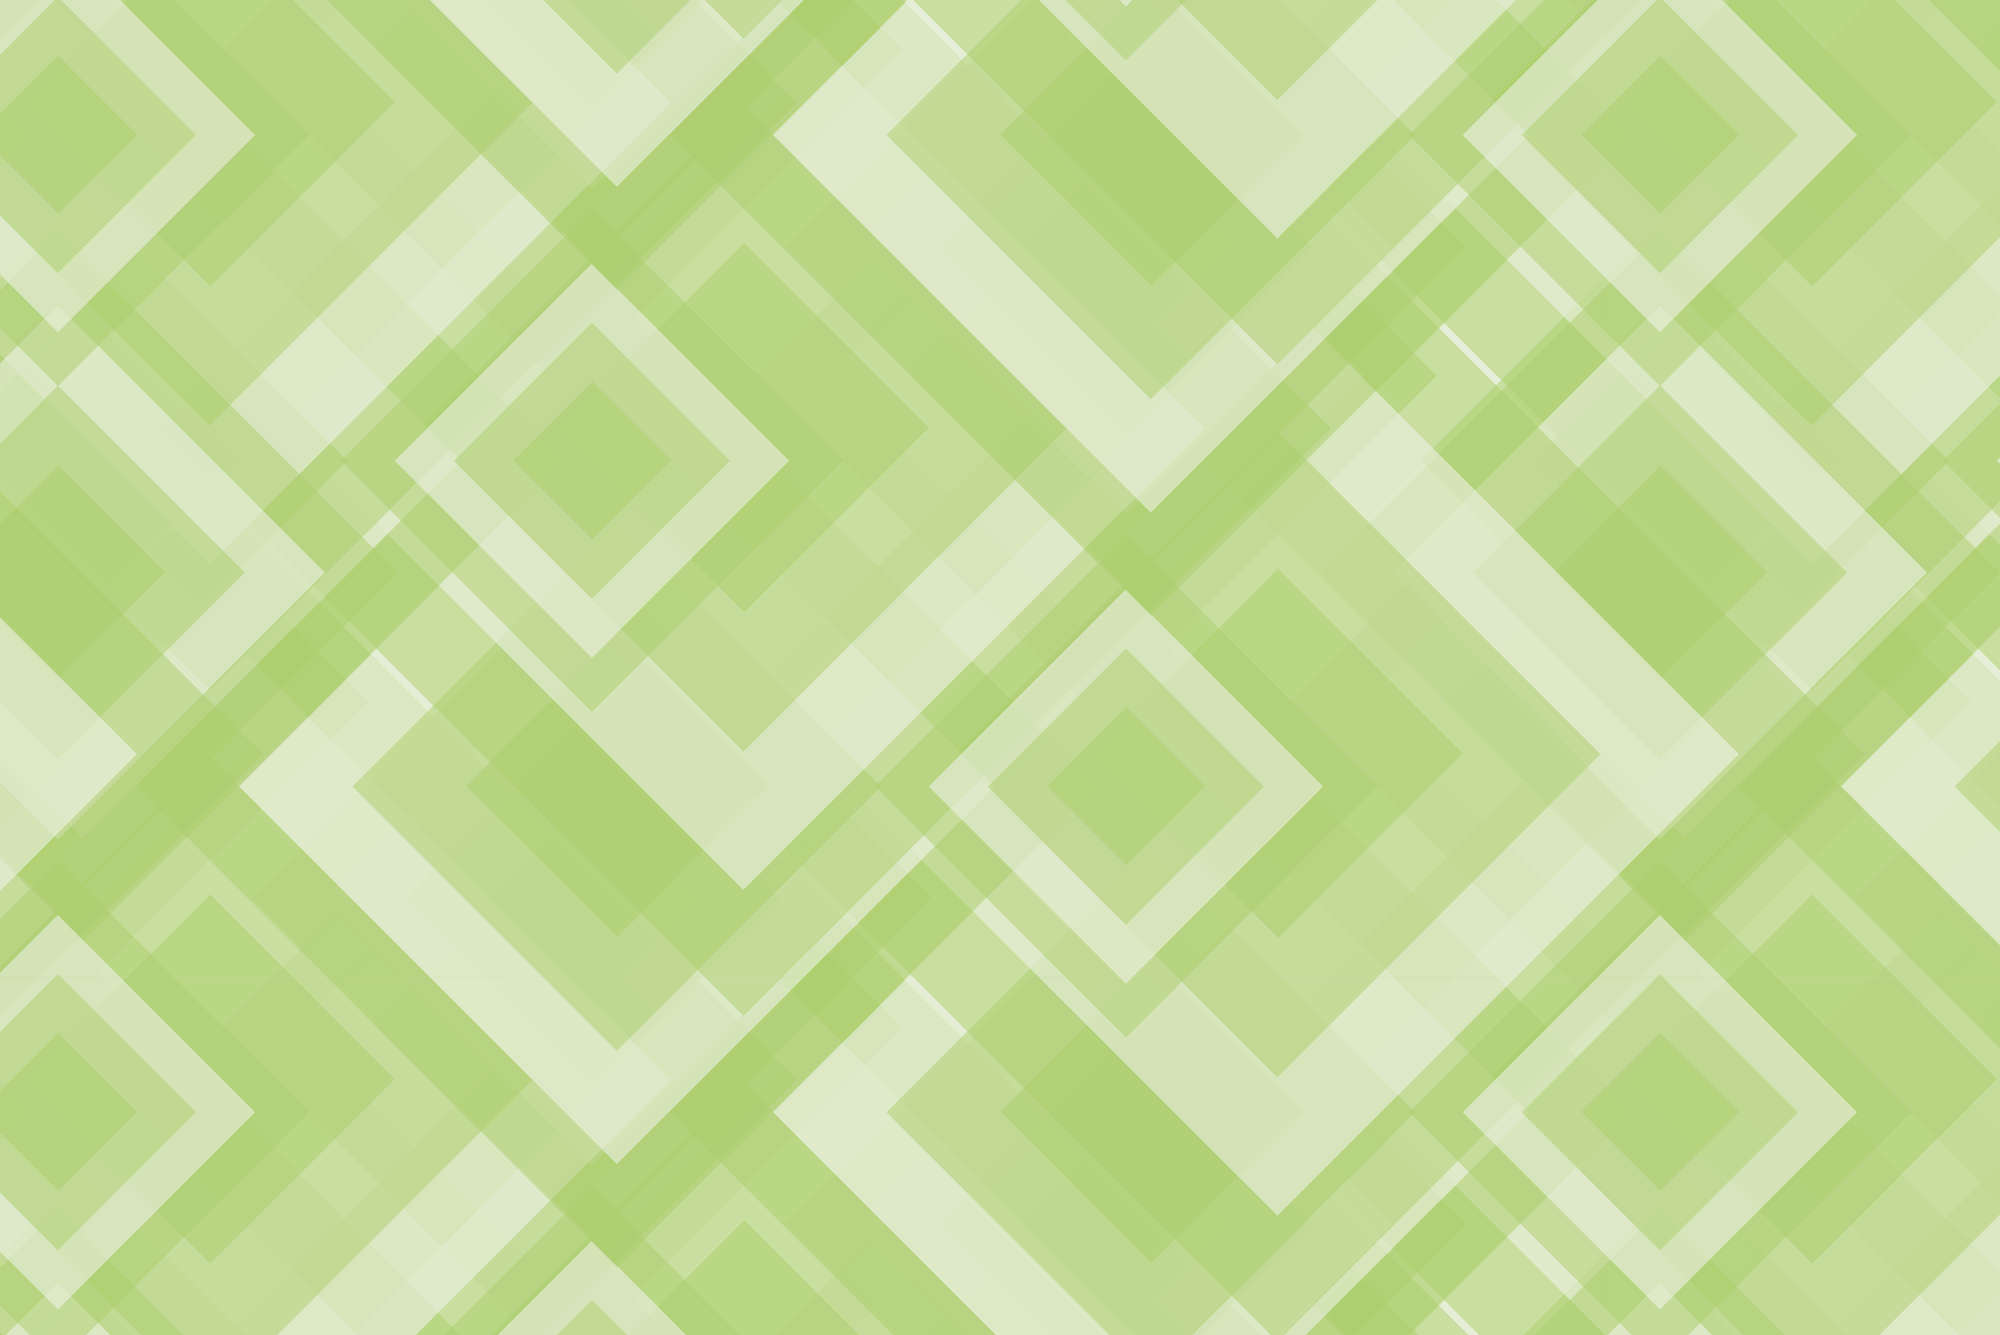             Papier peint panoramique design carrés se chevauchant vert sur intissé lisse mat
        